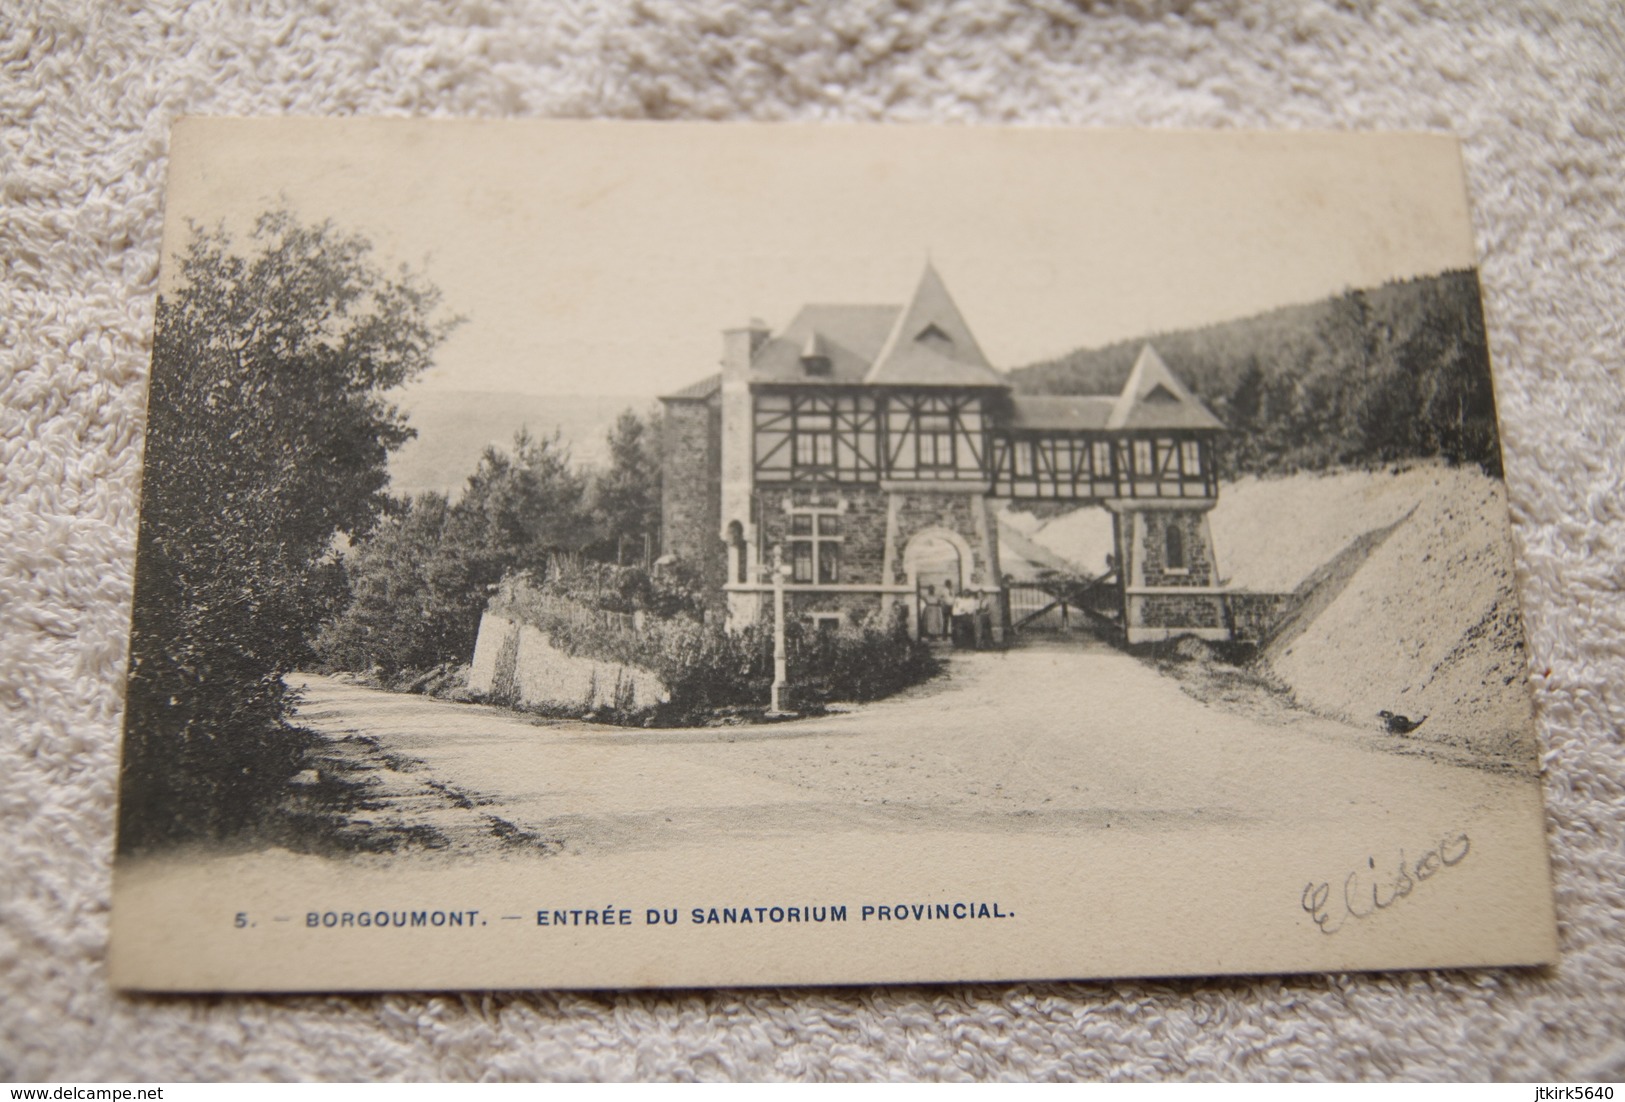 Borgoumont "Entrée Du Sanatorium Provincial" - Stoumont